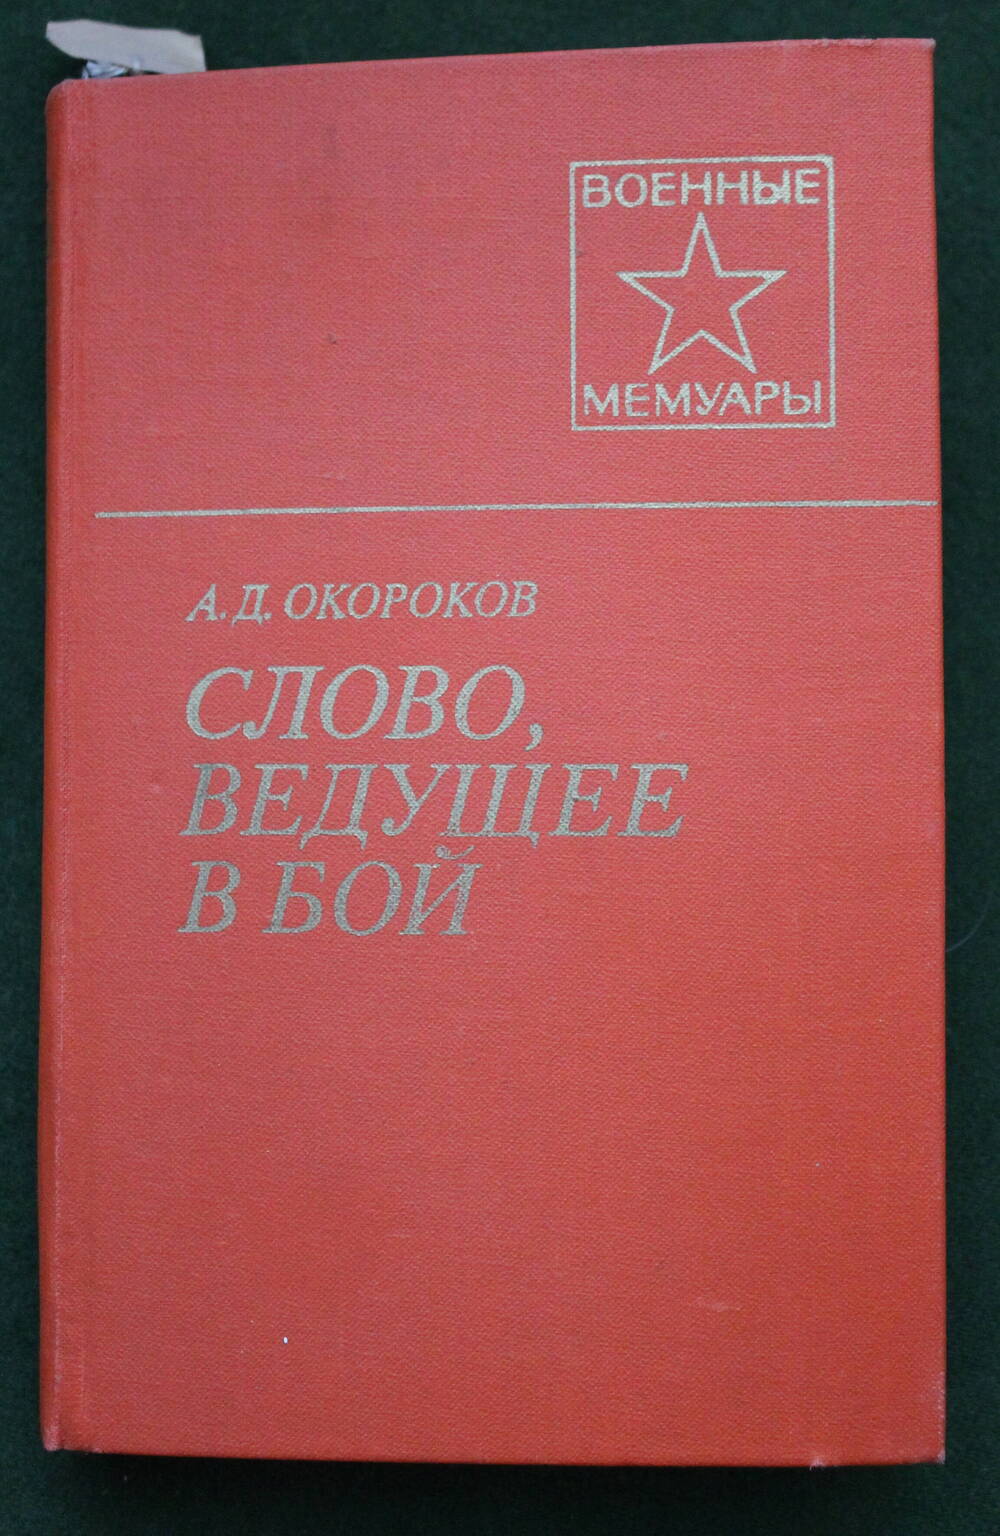 Книга
А.Д. Окороков. «Слово, ведущее в бой» Военные мемуары, М. 1980 г.